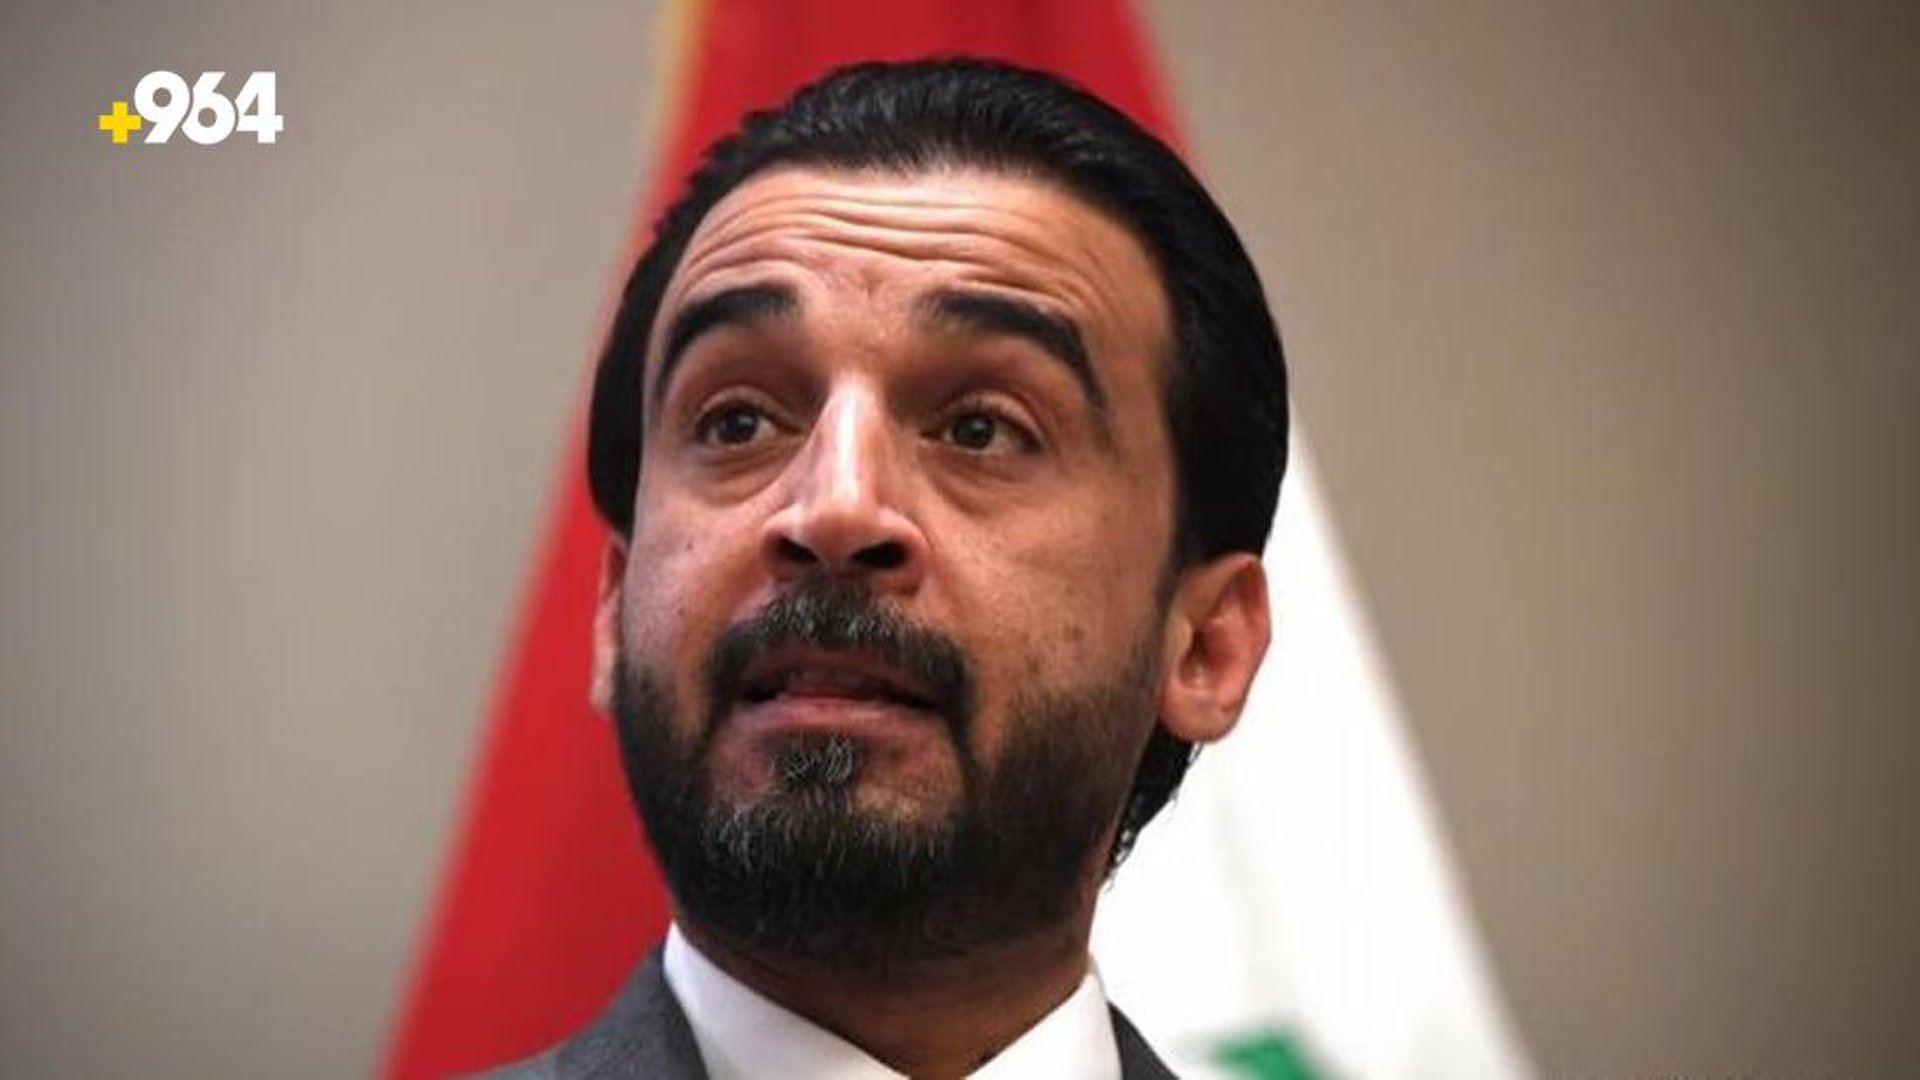 Iraqi court reportedly terminates Parliament Speaker expels Halbousi from legislature